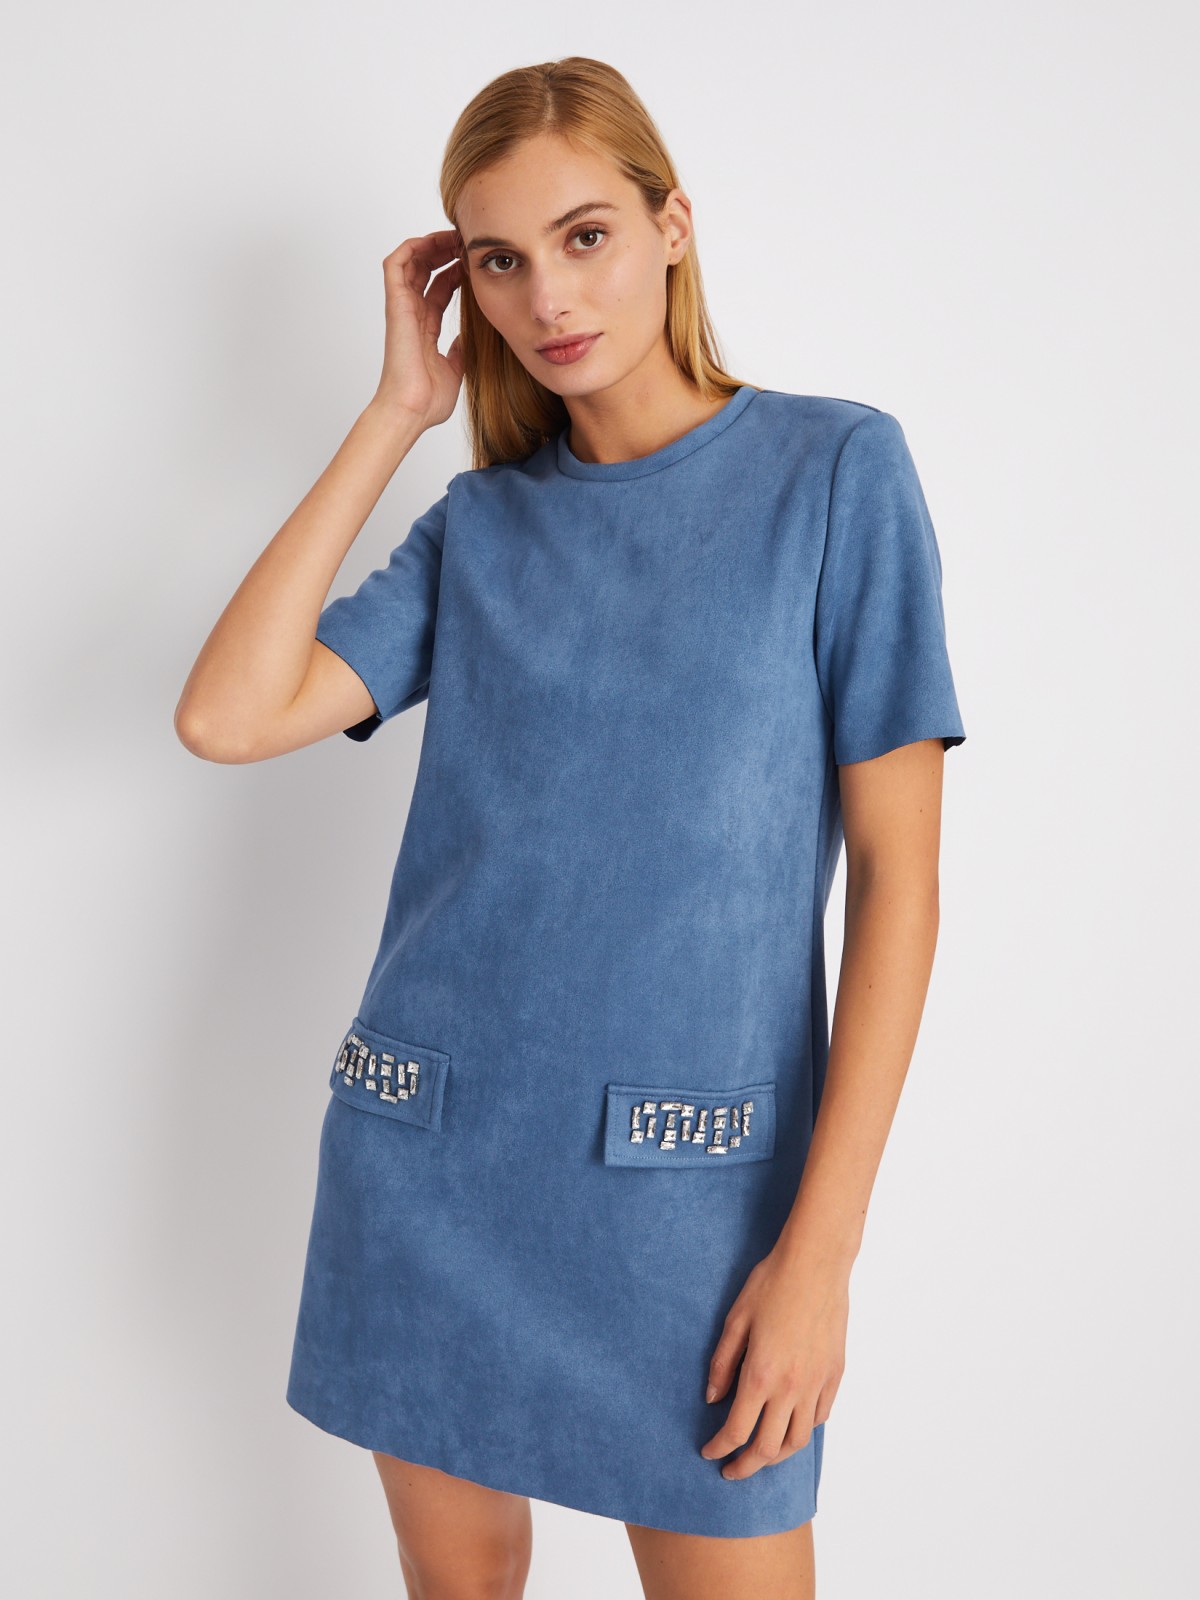 Платье-футболка из экозамши со стразами zolla 024118262361, цвет голубой, размер XS - фото 5